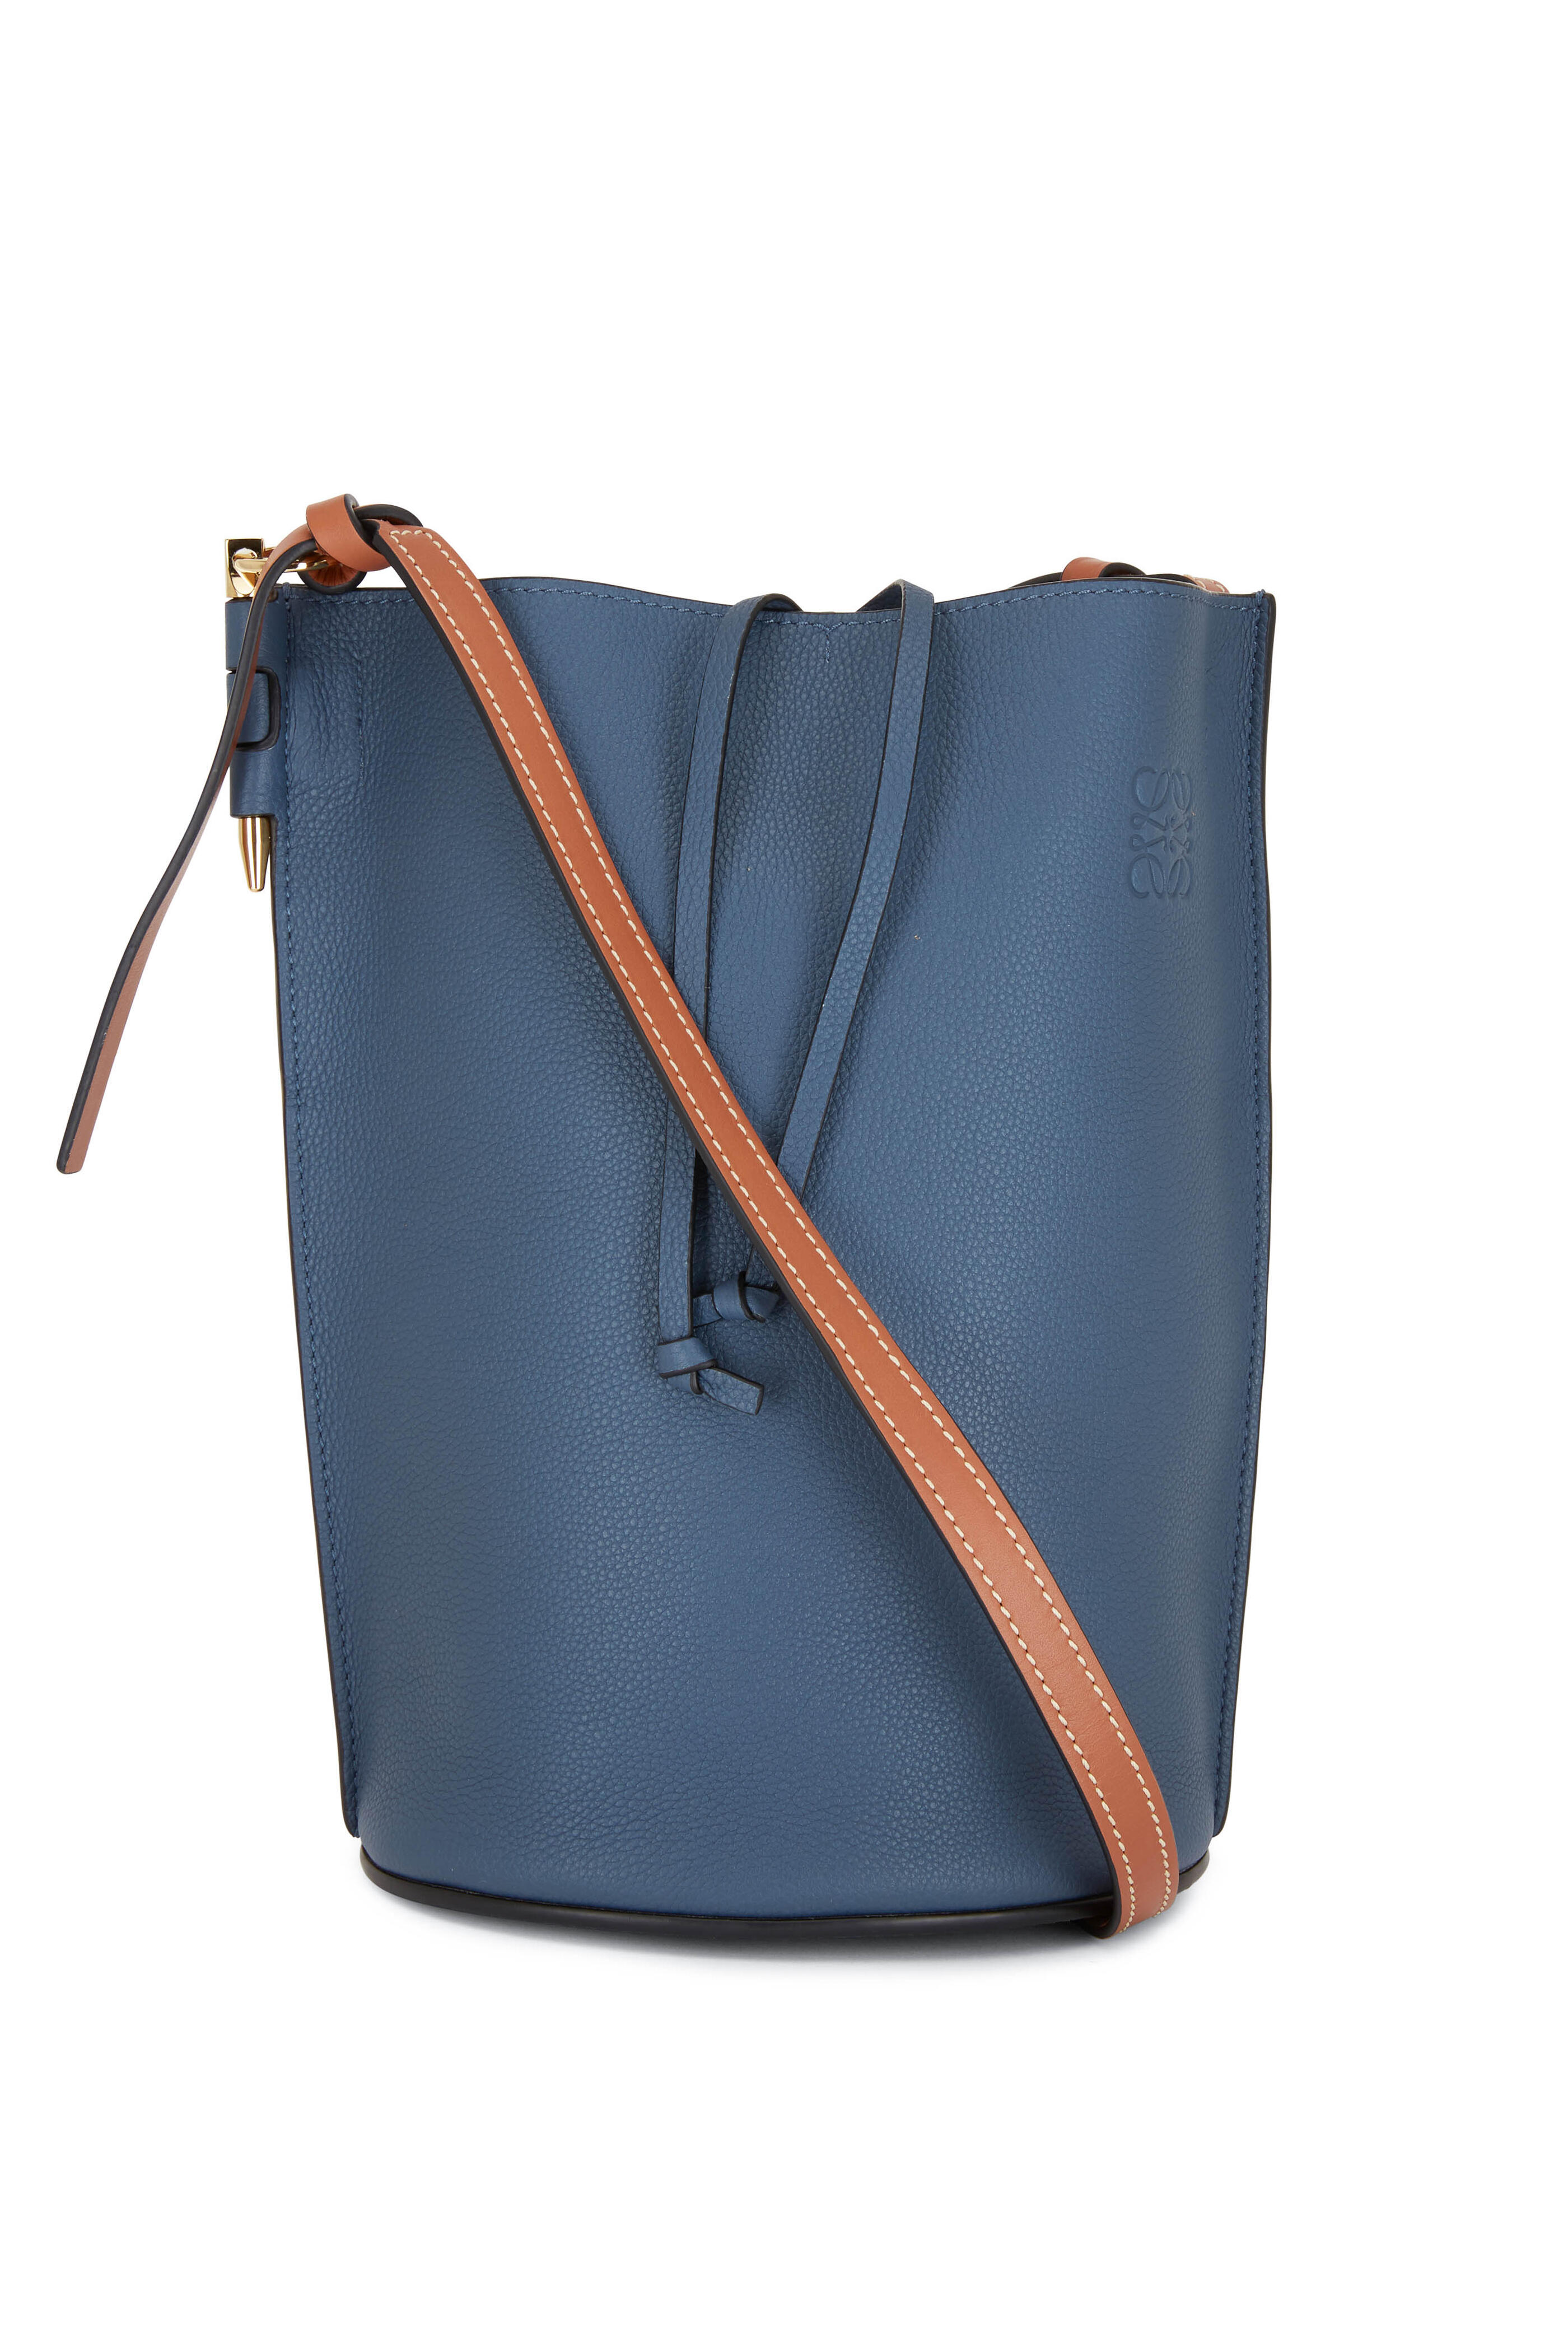 Loewe Gate bucket bag  Bucket bag, Bags, Online bags